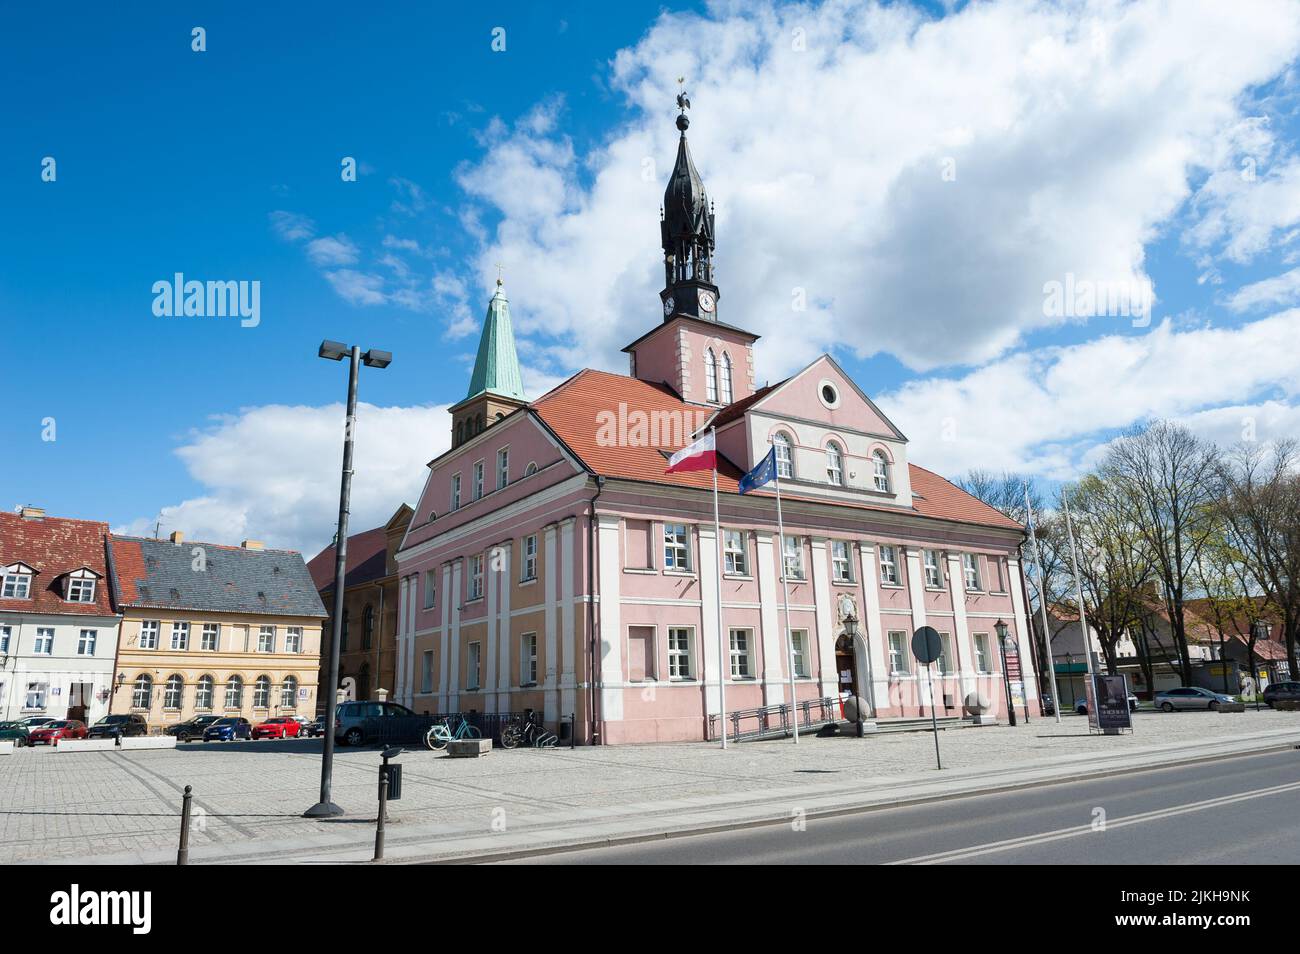 Town hall in Miedzyrzecz, Lubusz Voivodeship, Poland Stock Photo